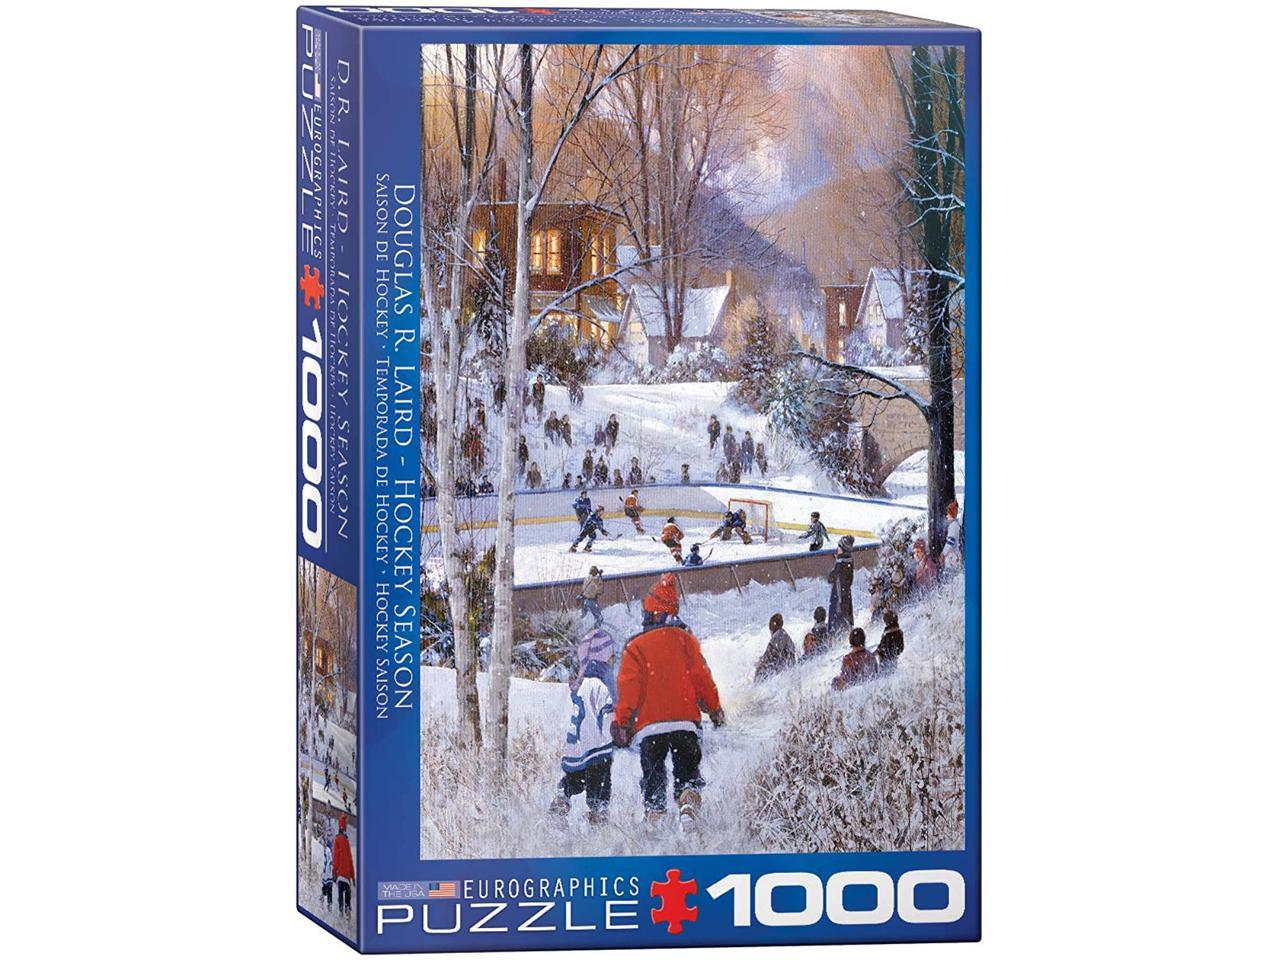 Eurographics Puzzle 1000 Piece Jigsaw Puzzle-La pêche cabine EG60005376 